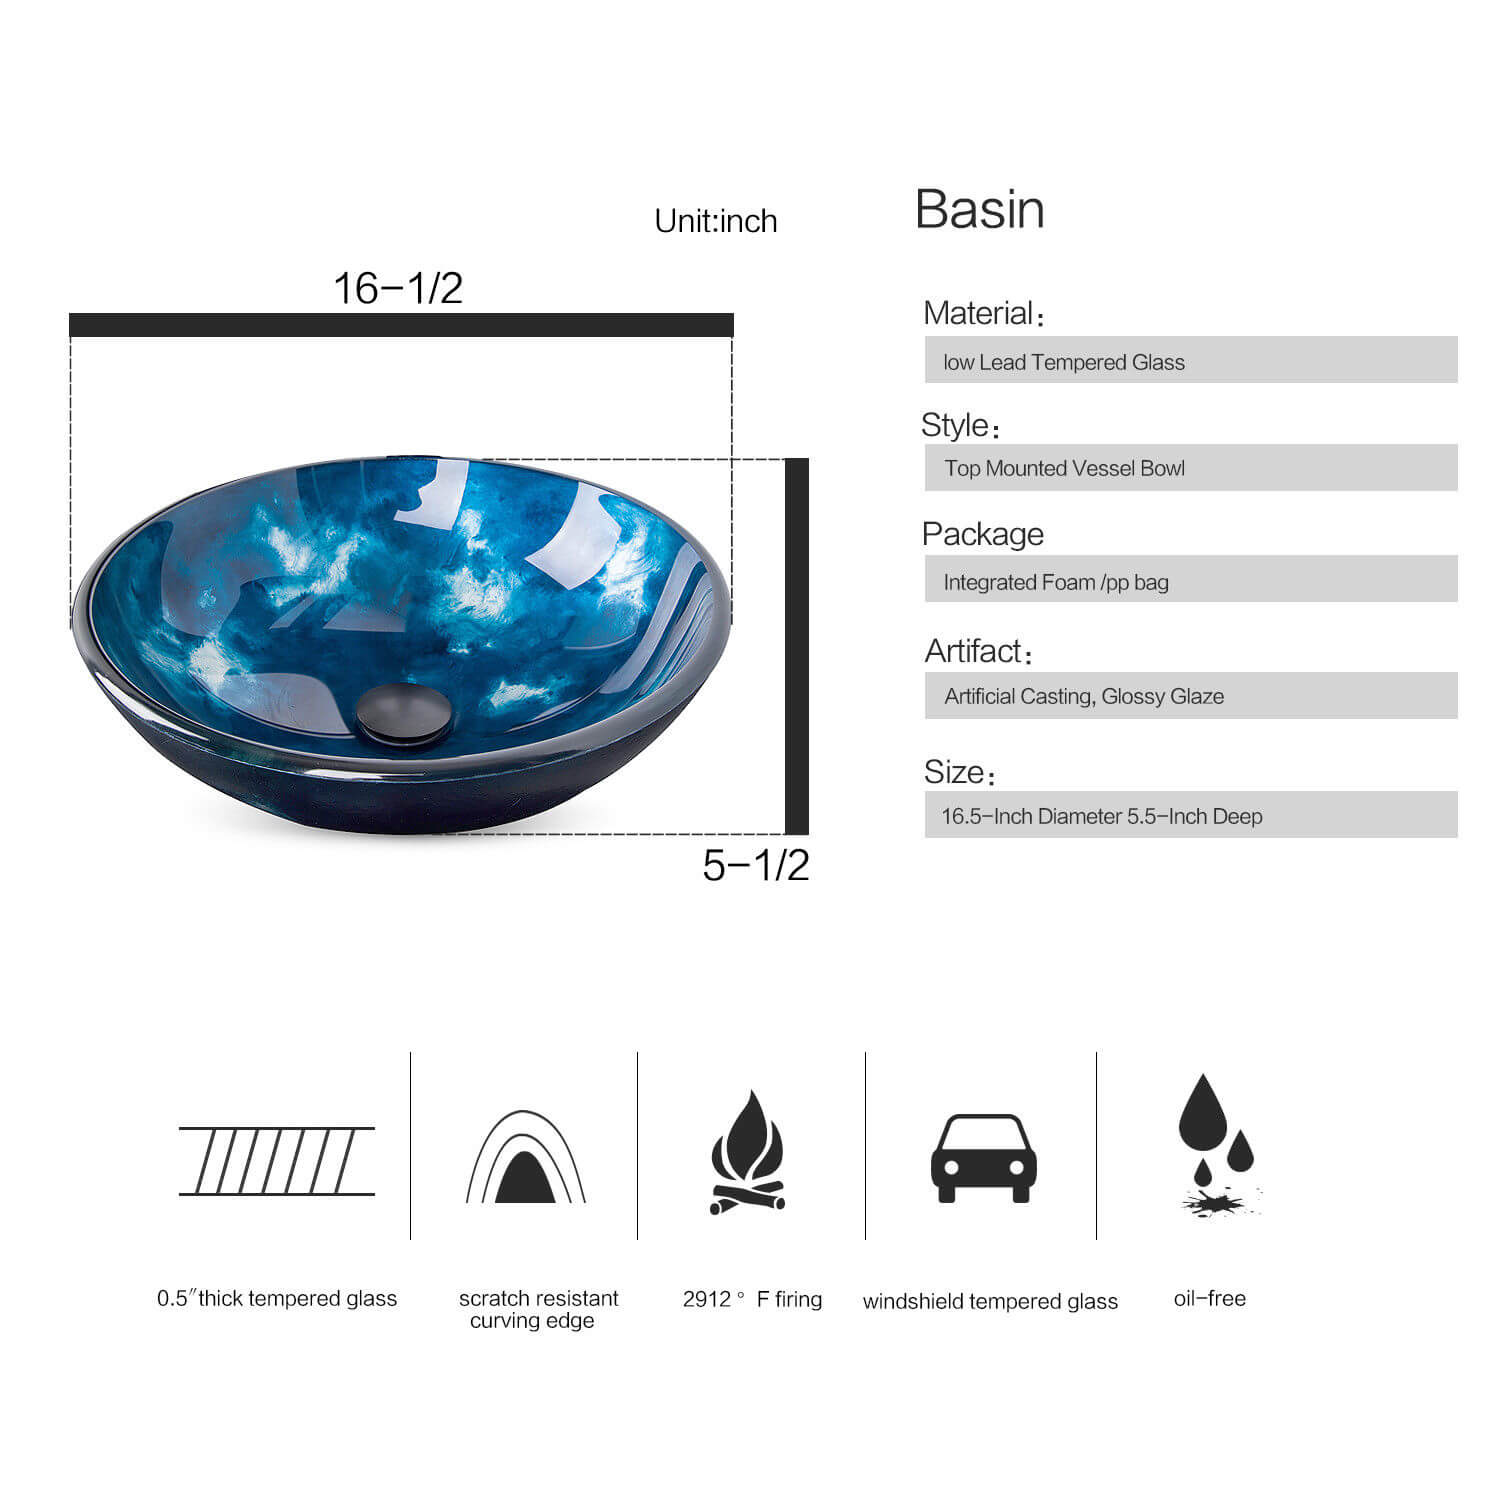  Elecwish ocean blue glass sink basin specification